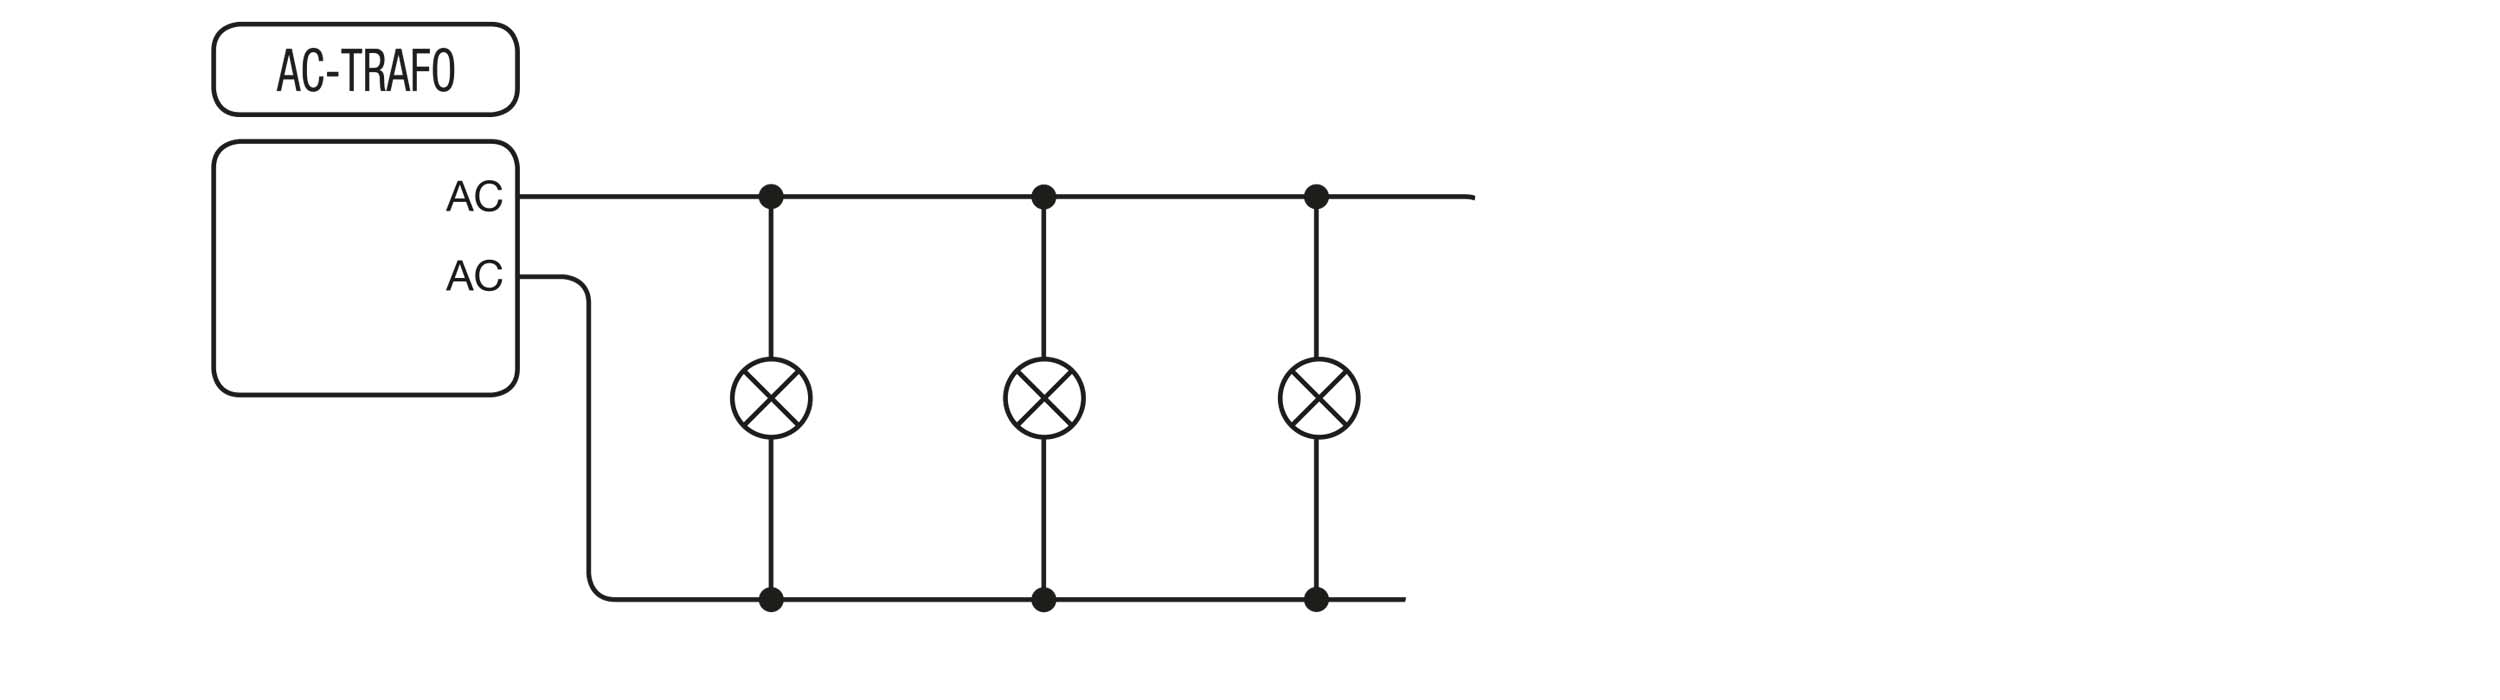 Paralellkoppling kopplingsschema